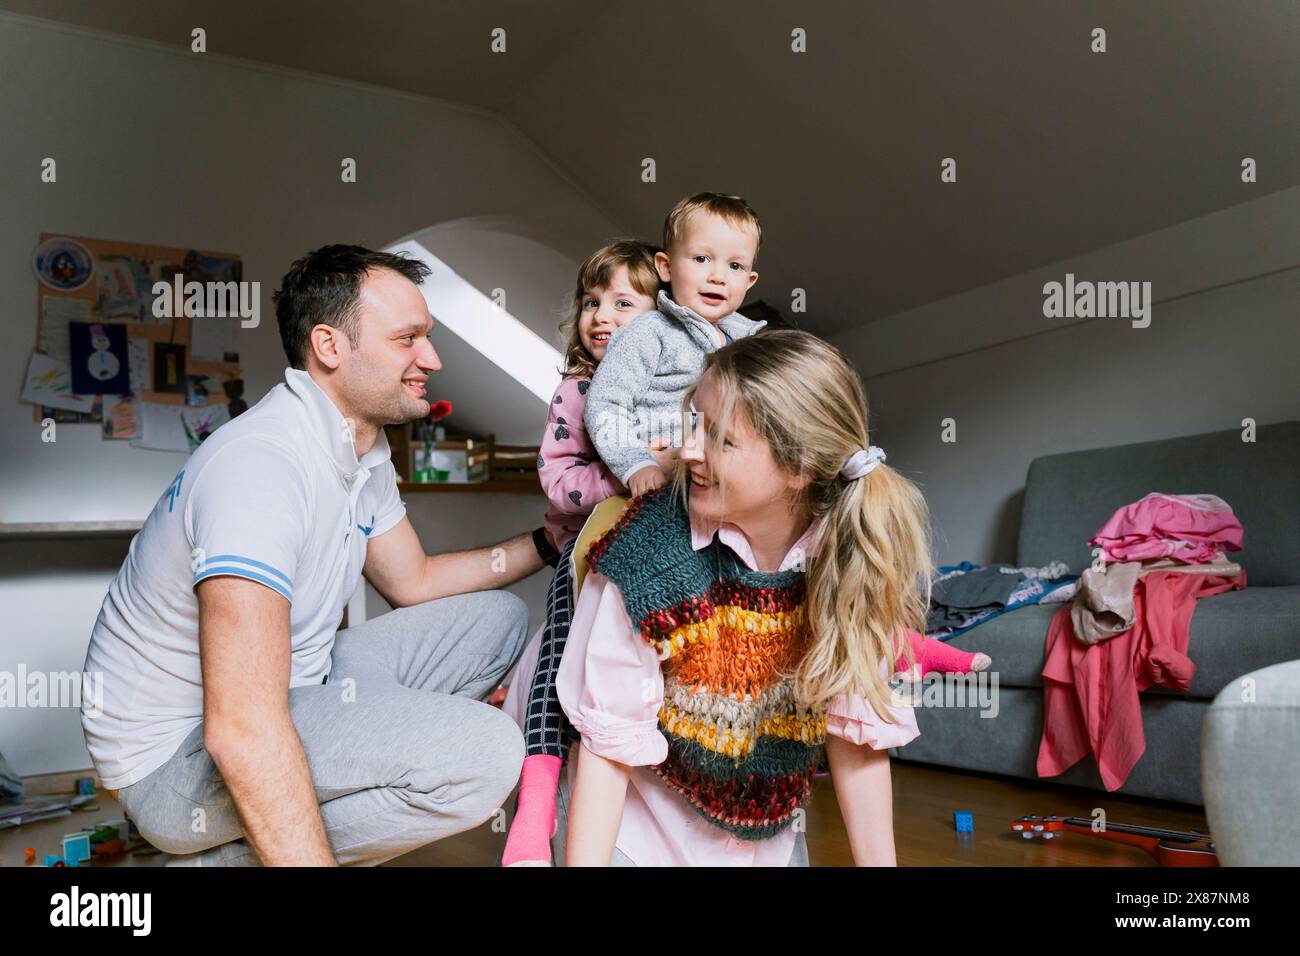 Homme souriant par les enfants sur le dos de la mère dans le salon Banque D'Images